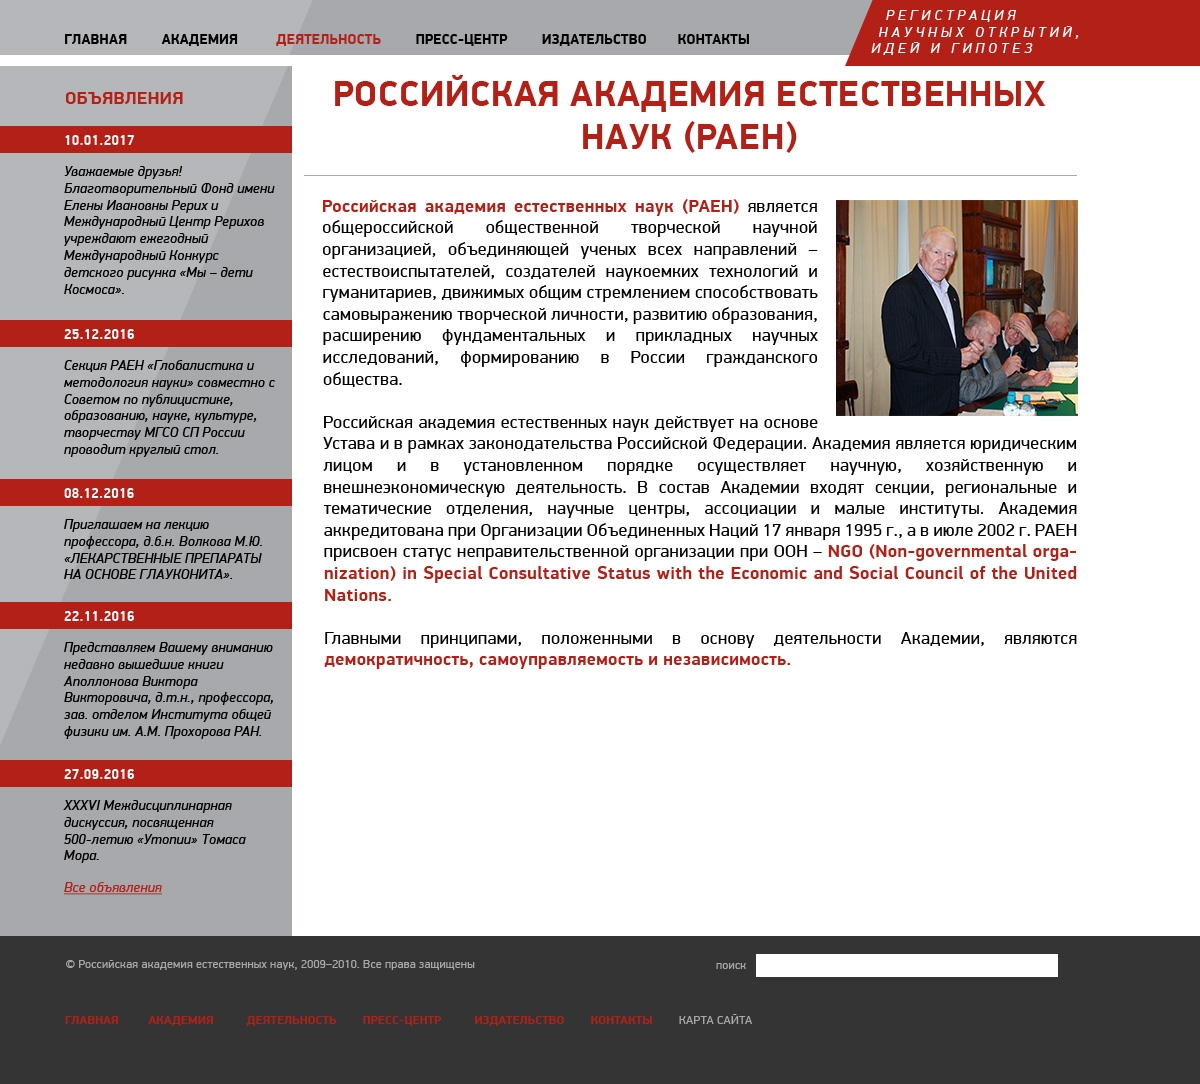 Макет страницы статьи сайта Российской академии естественных наук